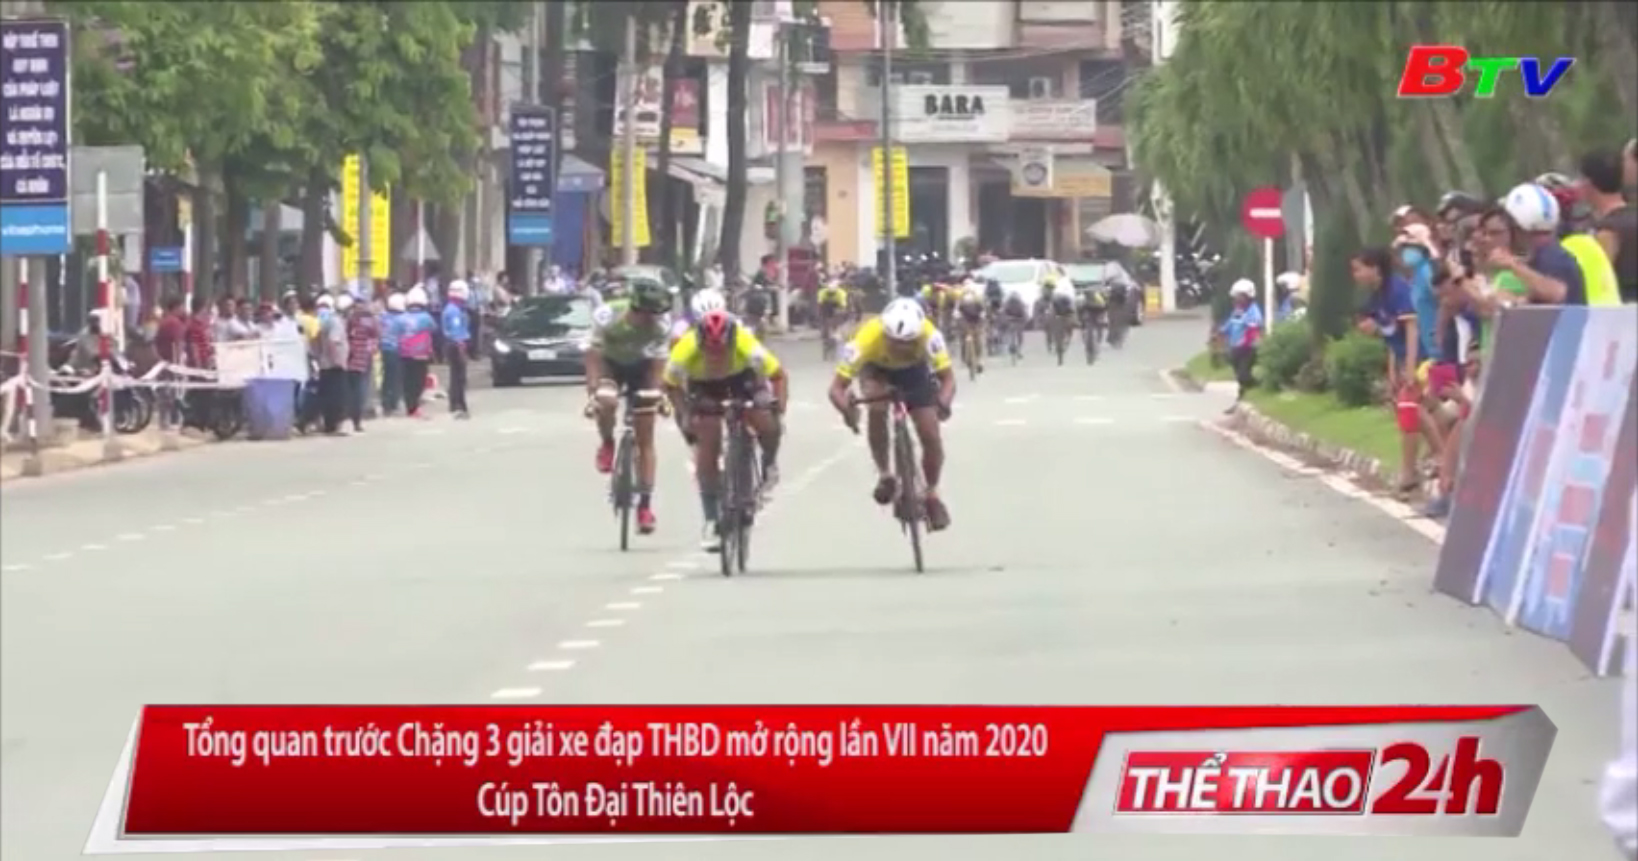 Tổng quan trước Chặng 3 Giải xe đạp Truyền hình Bình Dương mở rộng lần VII năm 2020 - Cúp Tôn Đại Thiên Lộc